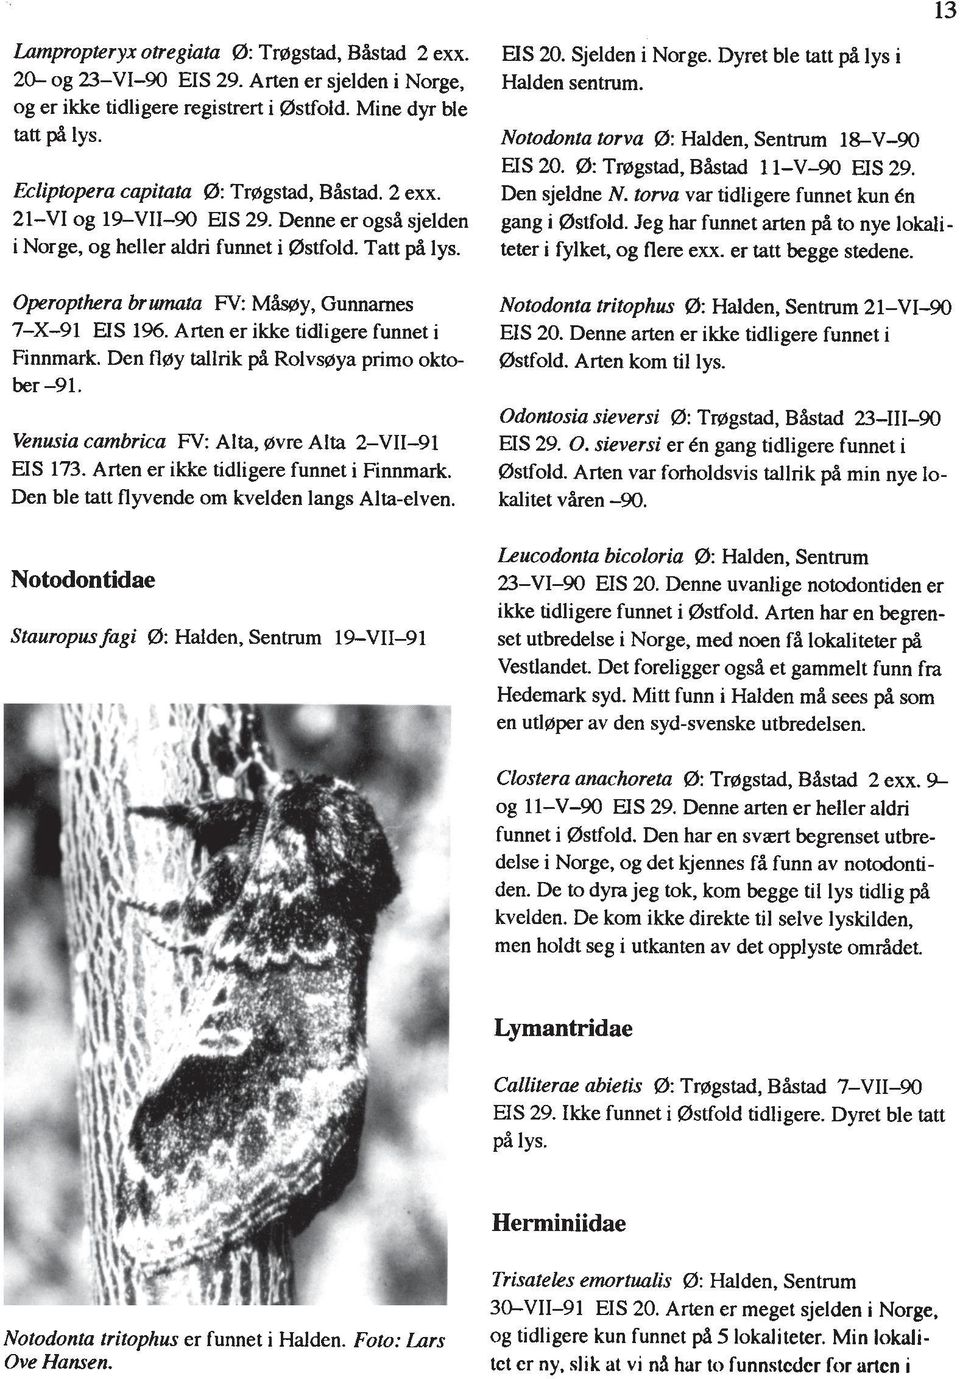 Operopthera br wnata FV: Mby, Gunnarnes 7-X-91 US 1%. Arten er ikke tidigere funnet i Finnrnark. Den fl~y tallrik pi Rolvs~iya primo oktober -91.